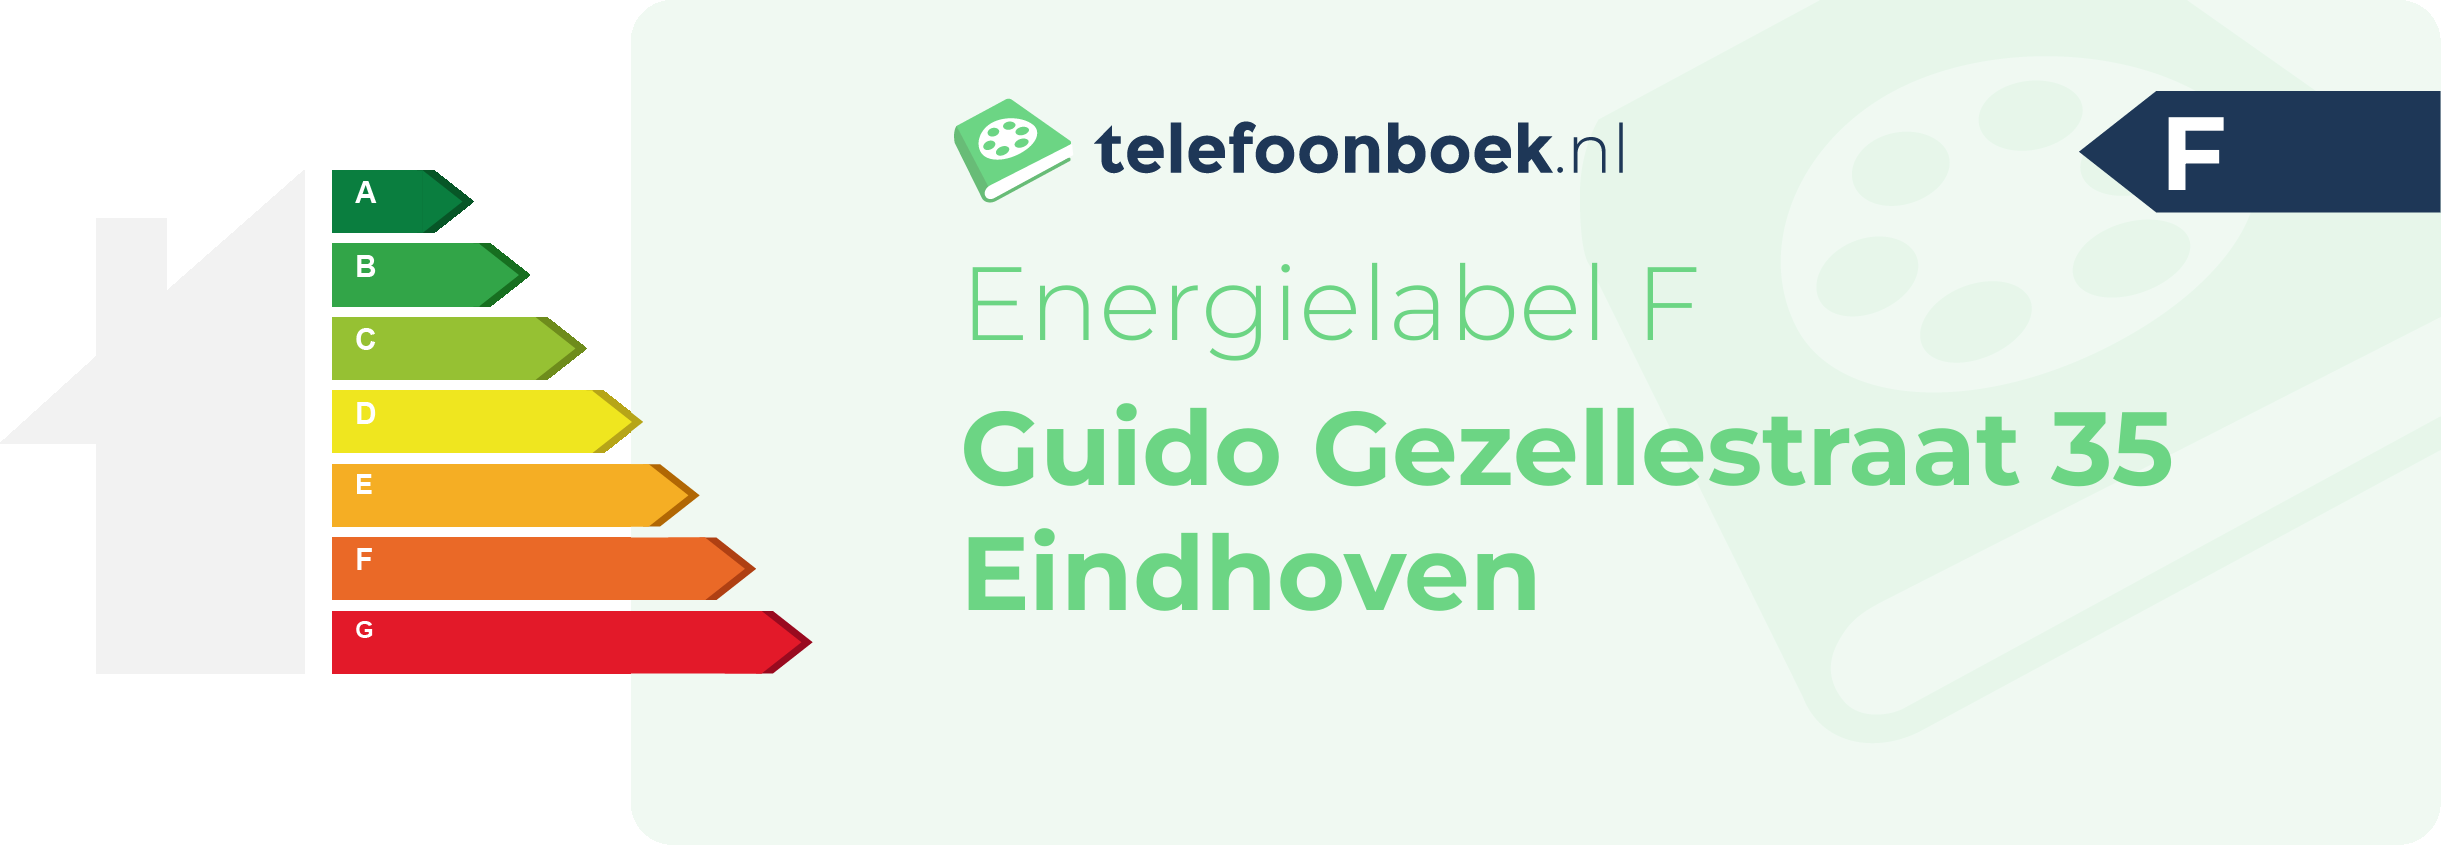 Energielabel Guido Gezellestraat 35 Eindhoven